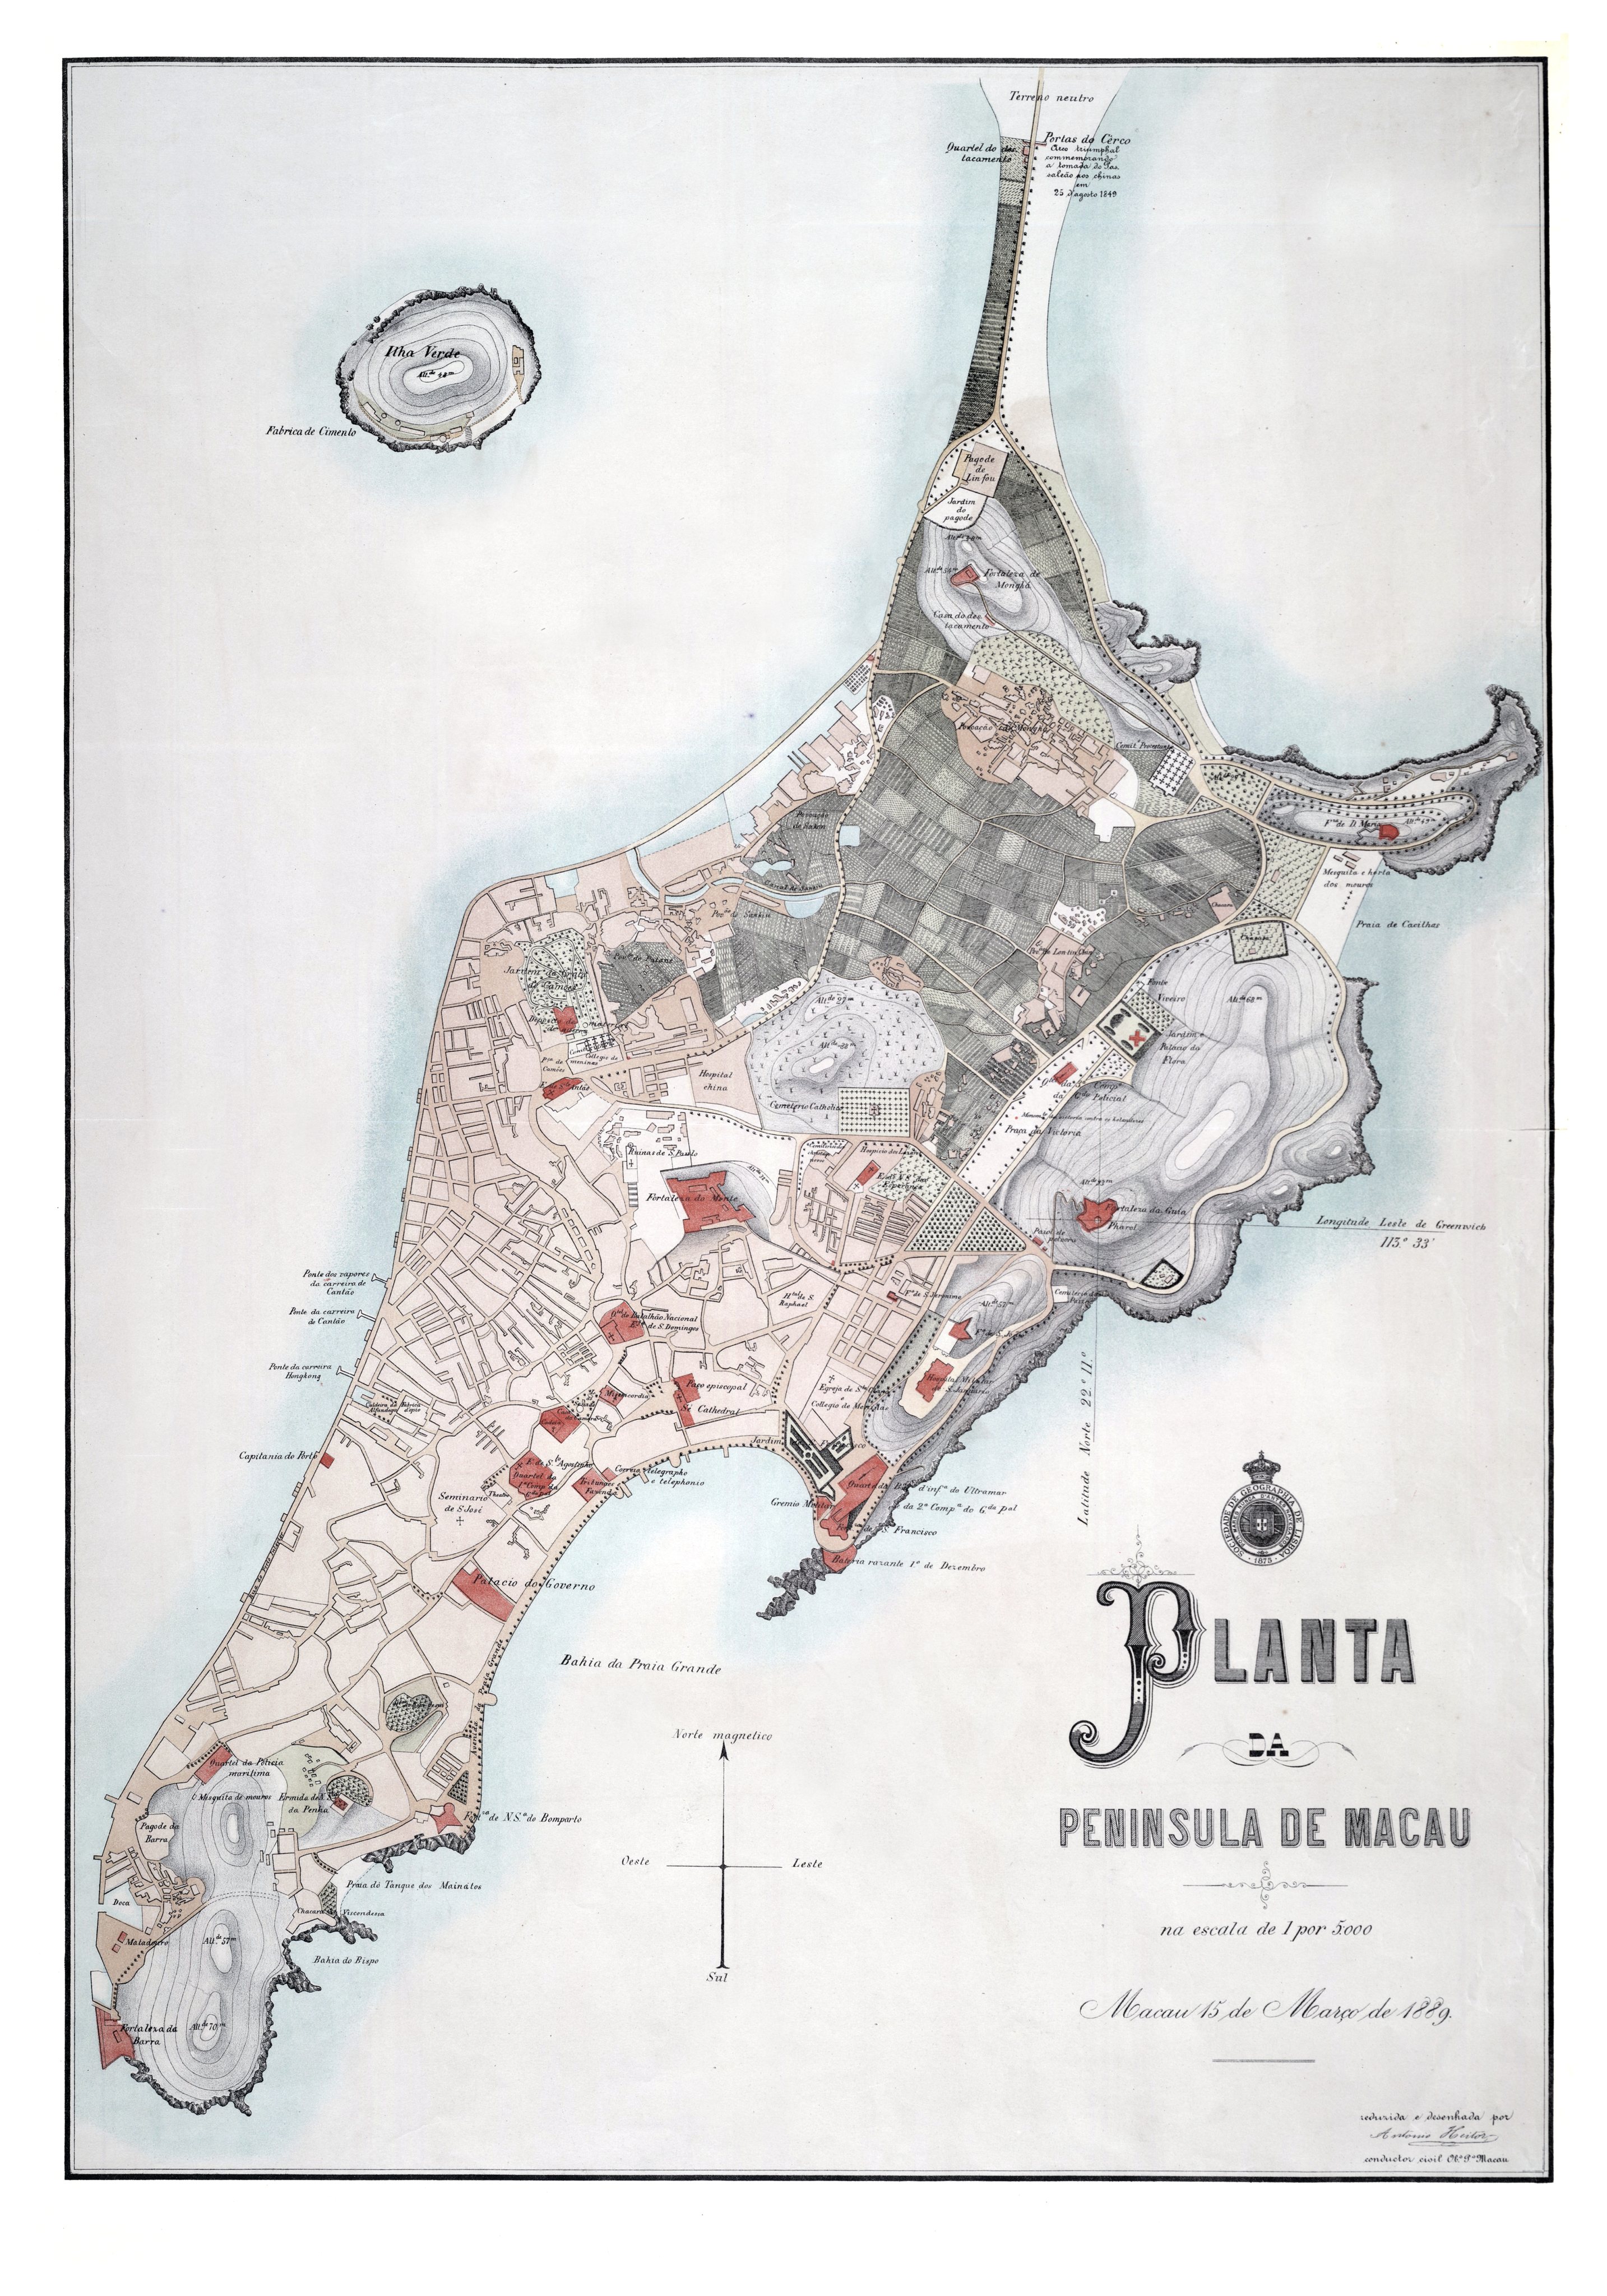 Planta da peninsula de Macau. Sociedade de Geografia de Lisboa, 1889.